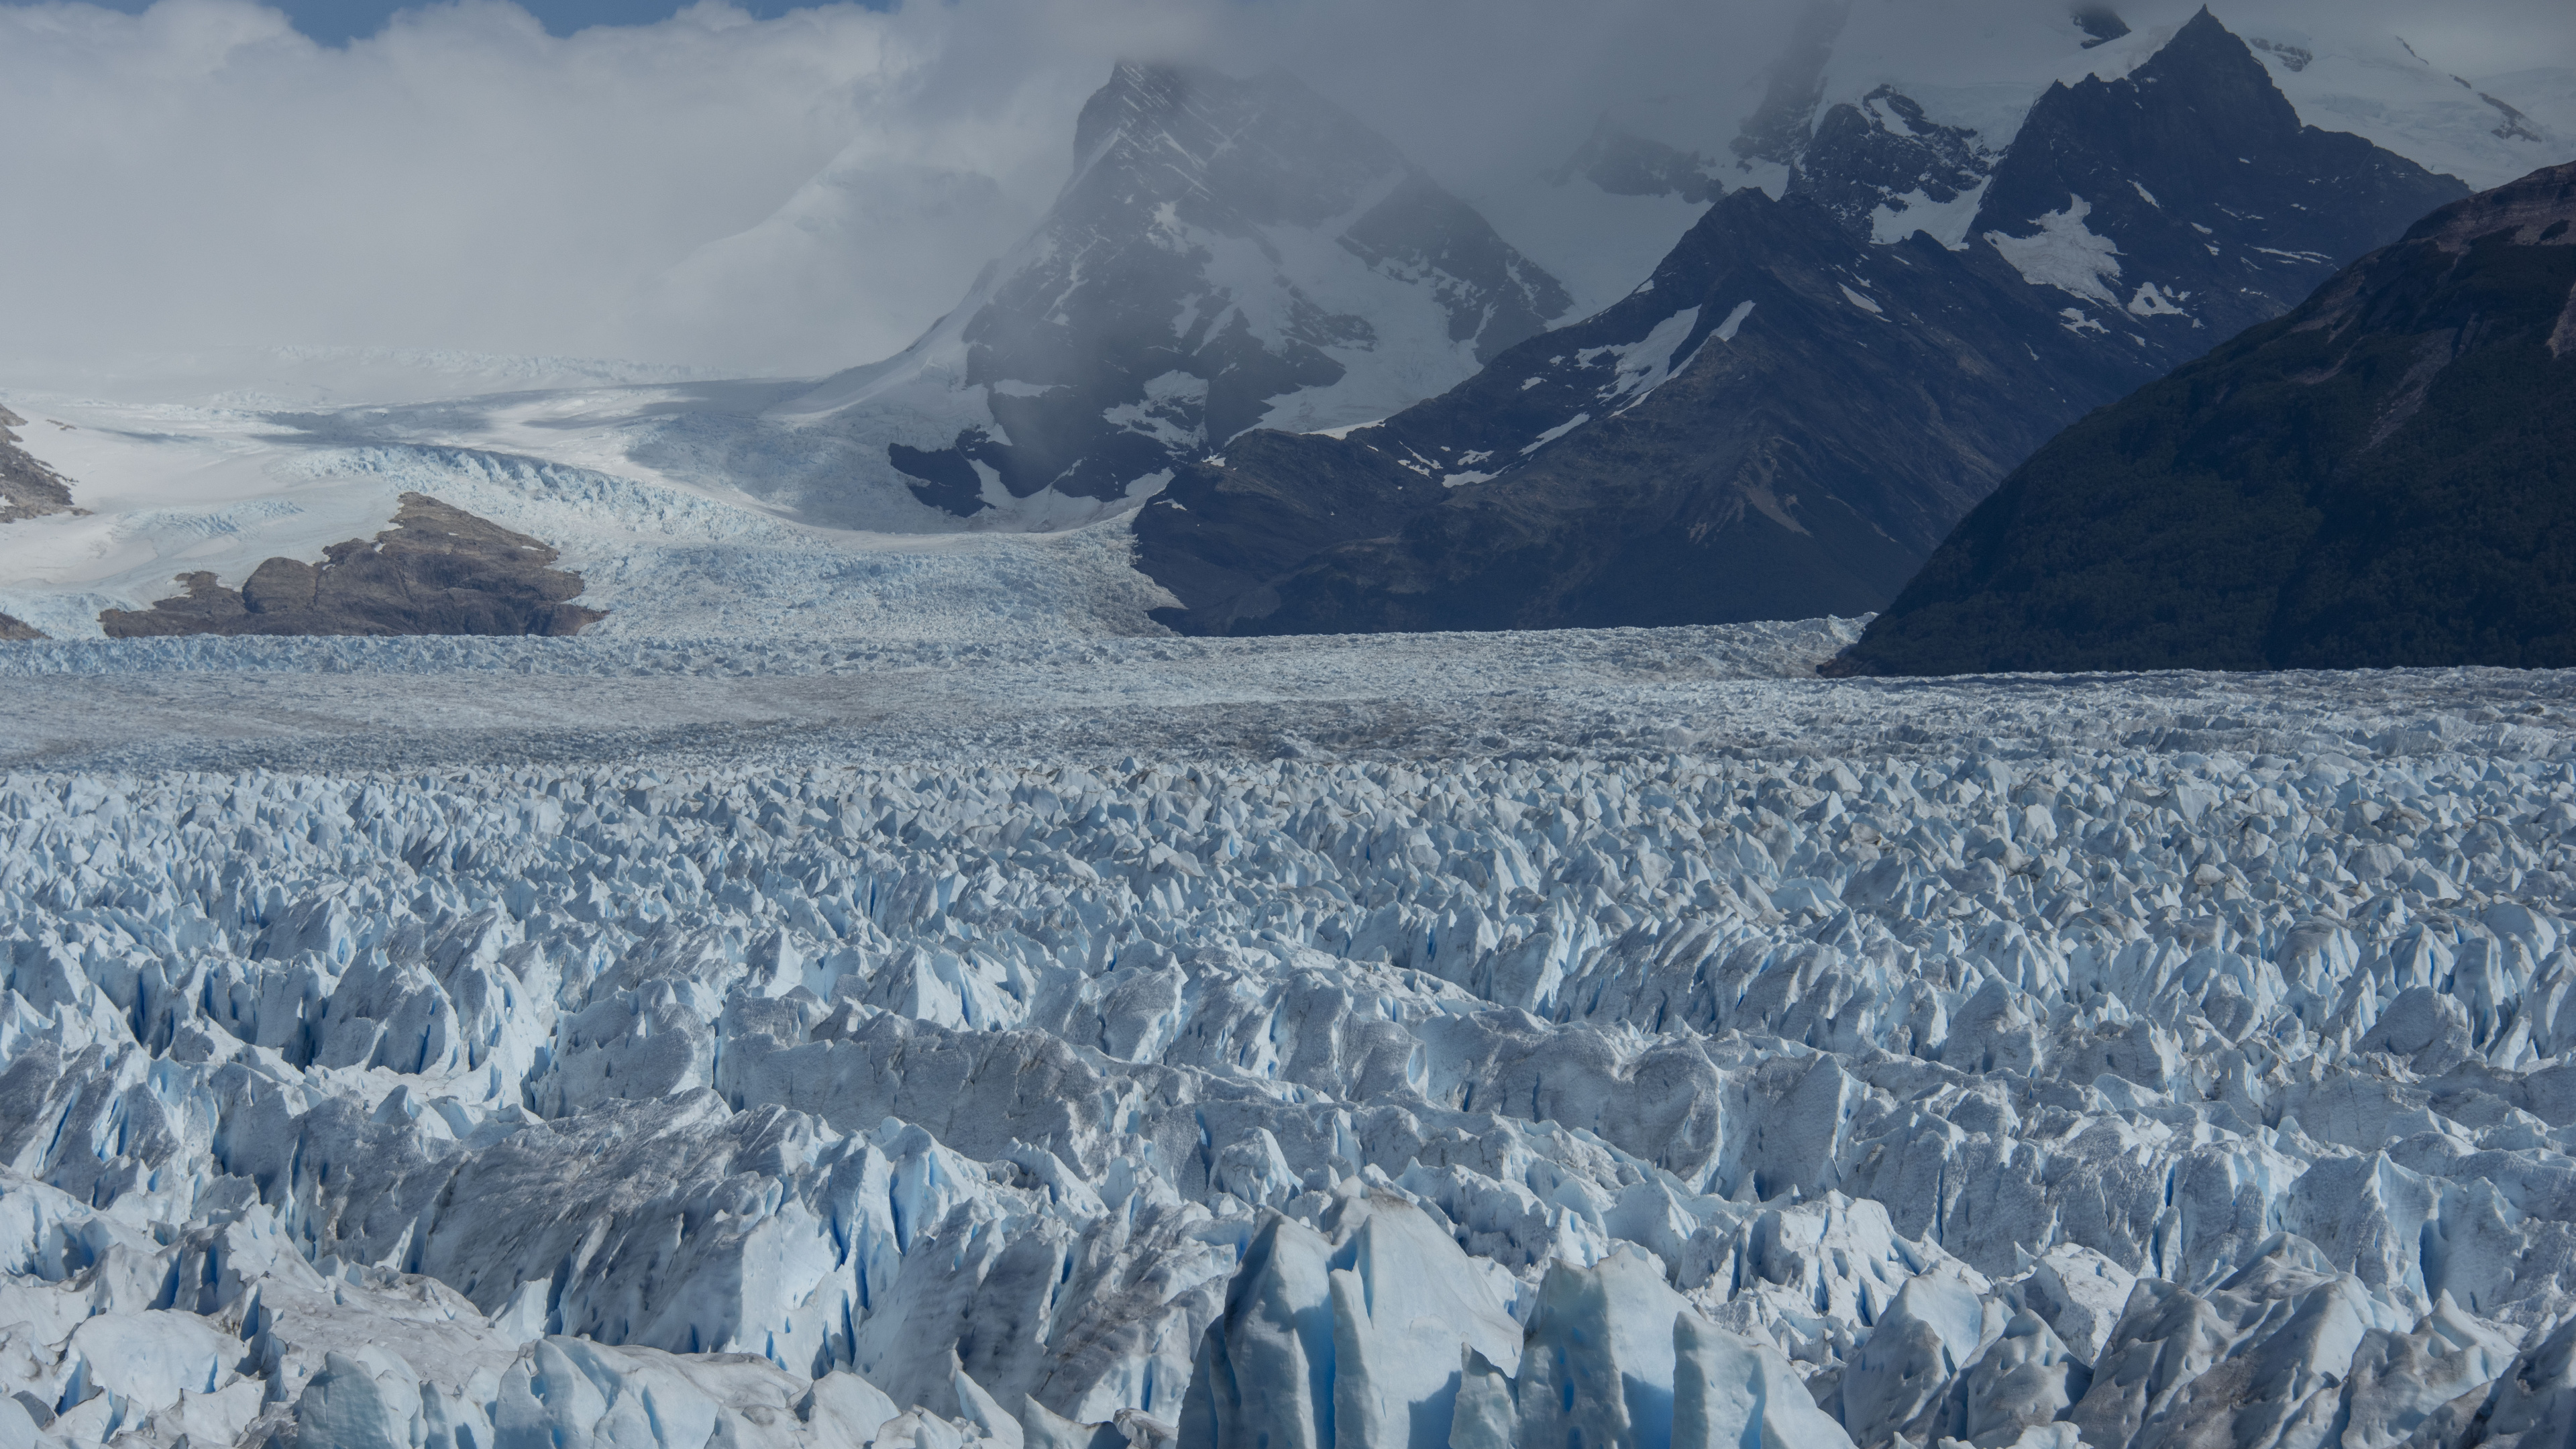 Gletscher, Eisberg, Gletschersee, Bergigen Landschaftsformen, Gletscher-landform. Wallpaper in 3840x2160 Resolution